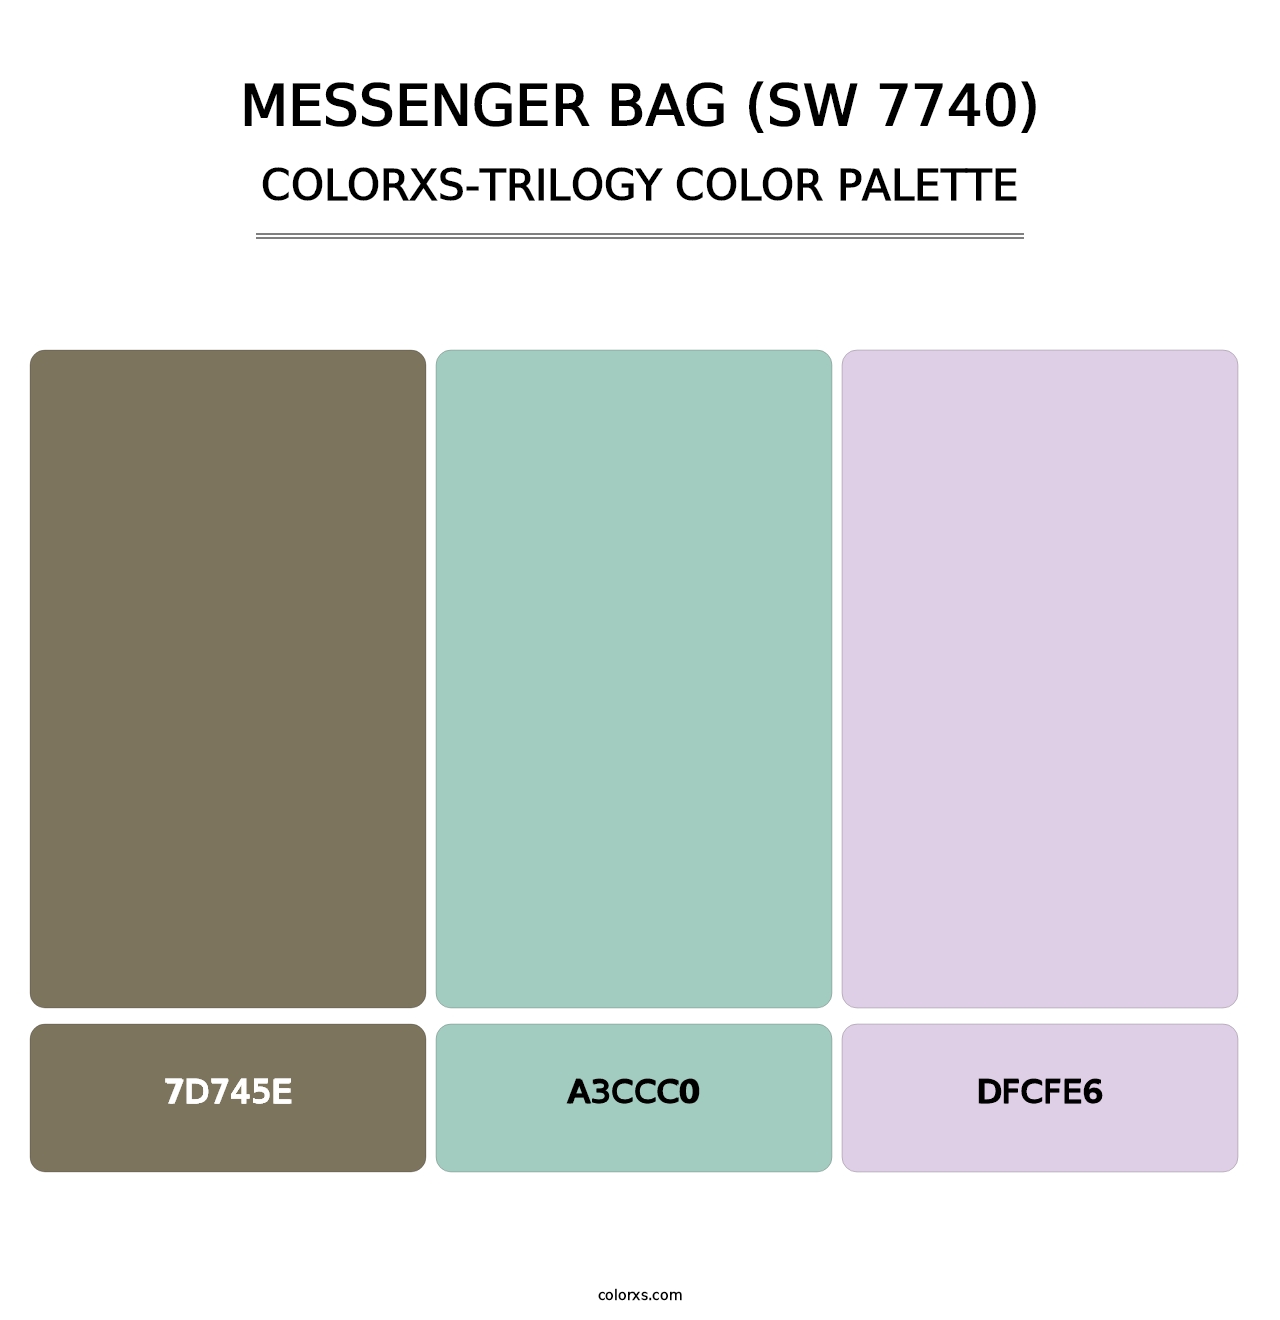 Messenger Bag (SW 7740) - Colorxs Trilogy Palette